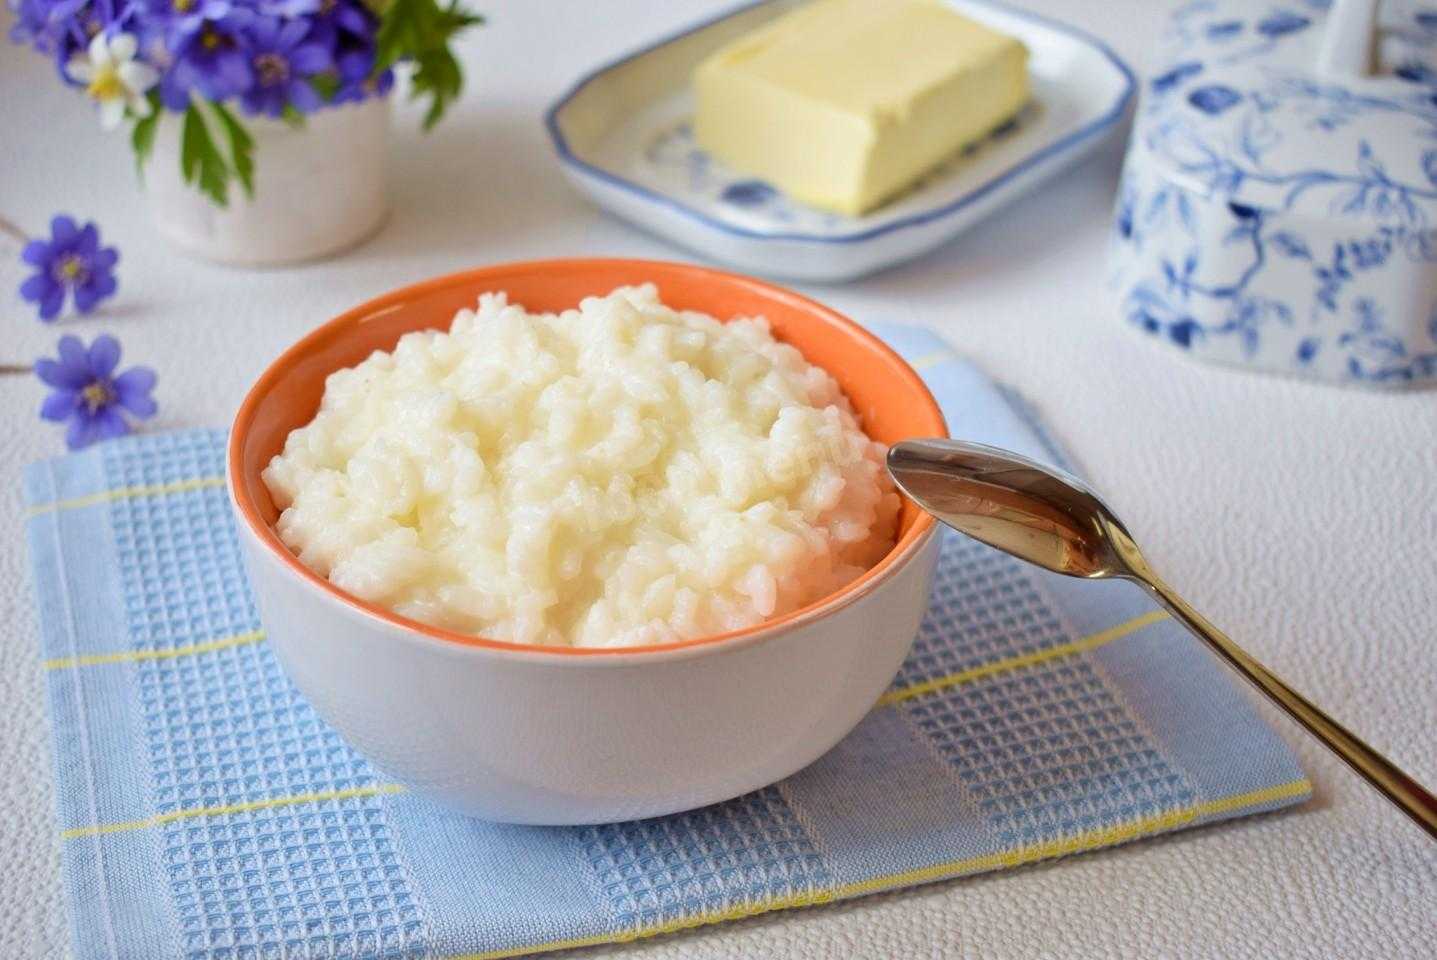 Как сварить рисовую кашу быстро и вкусно — несколько простых домашних рецептов